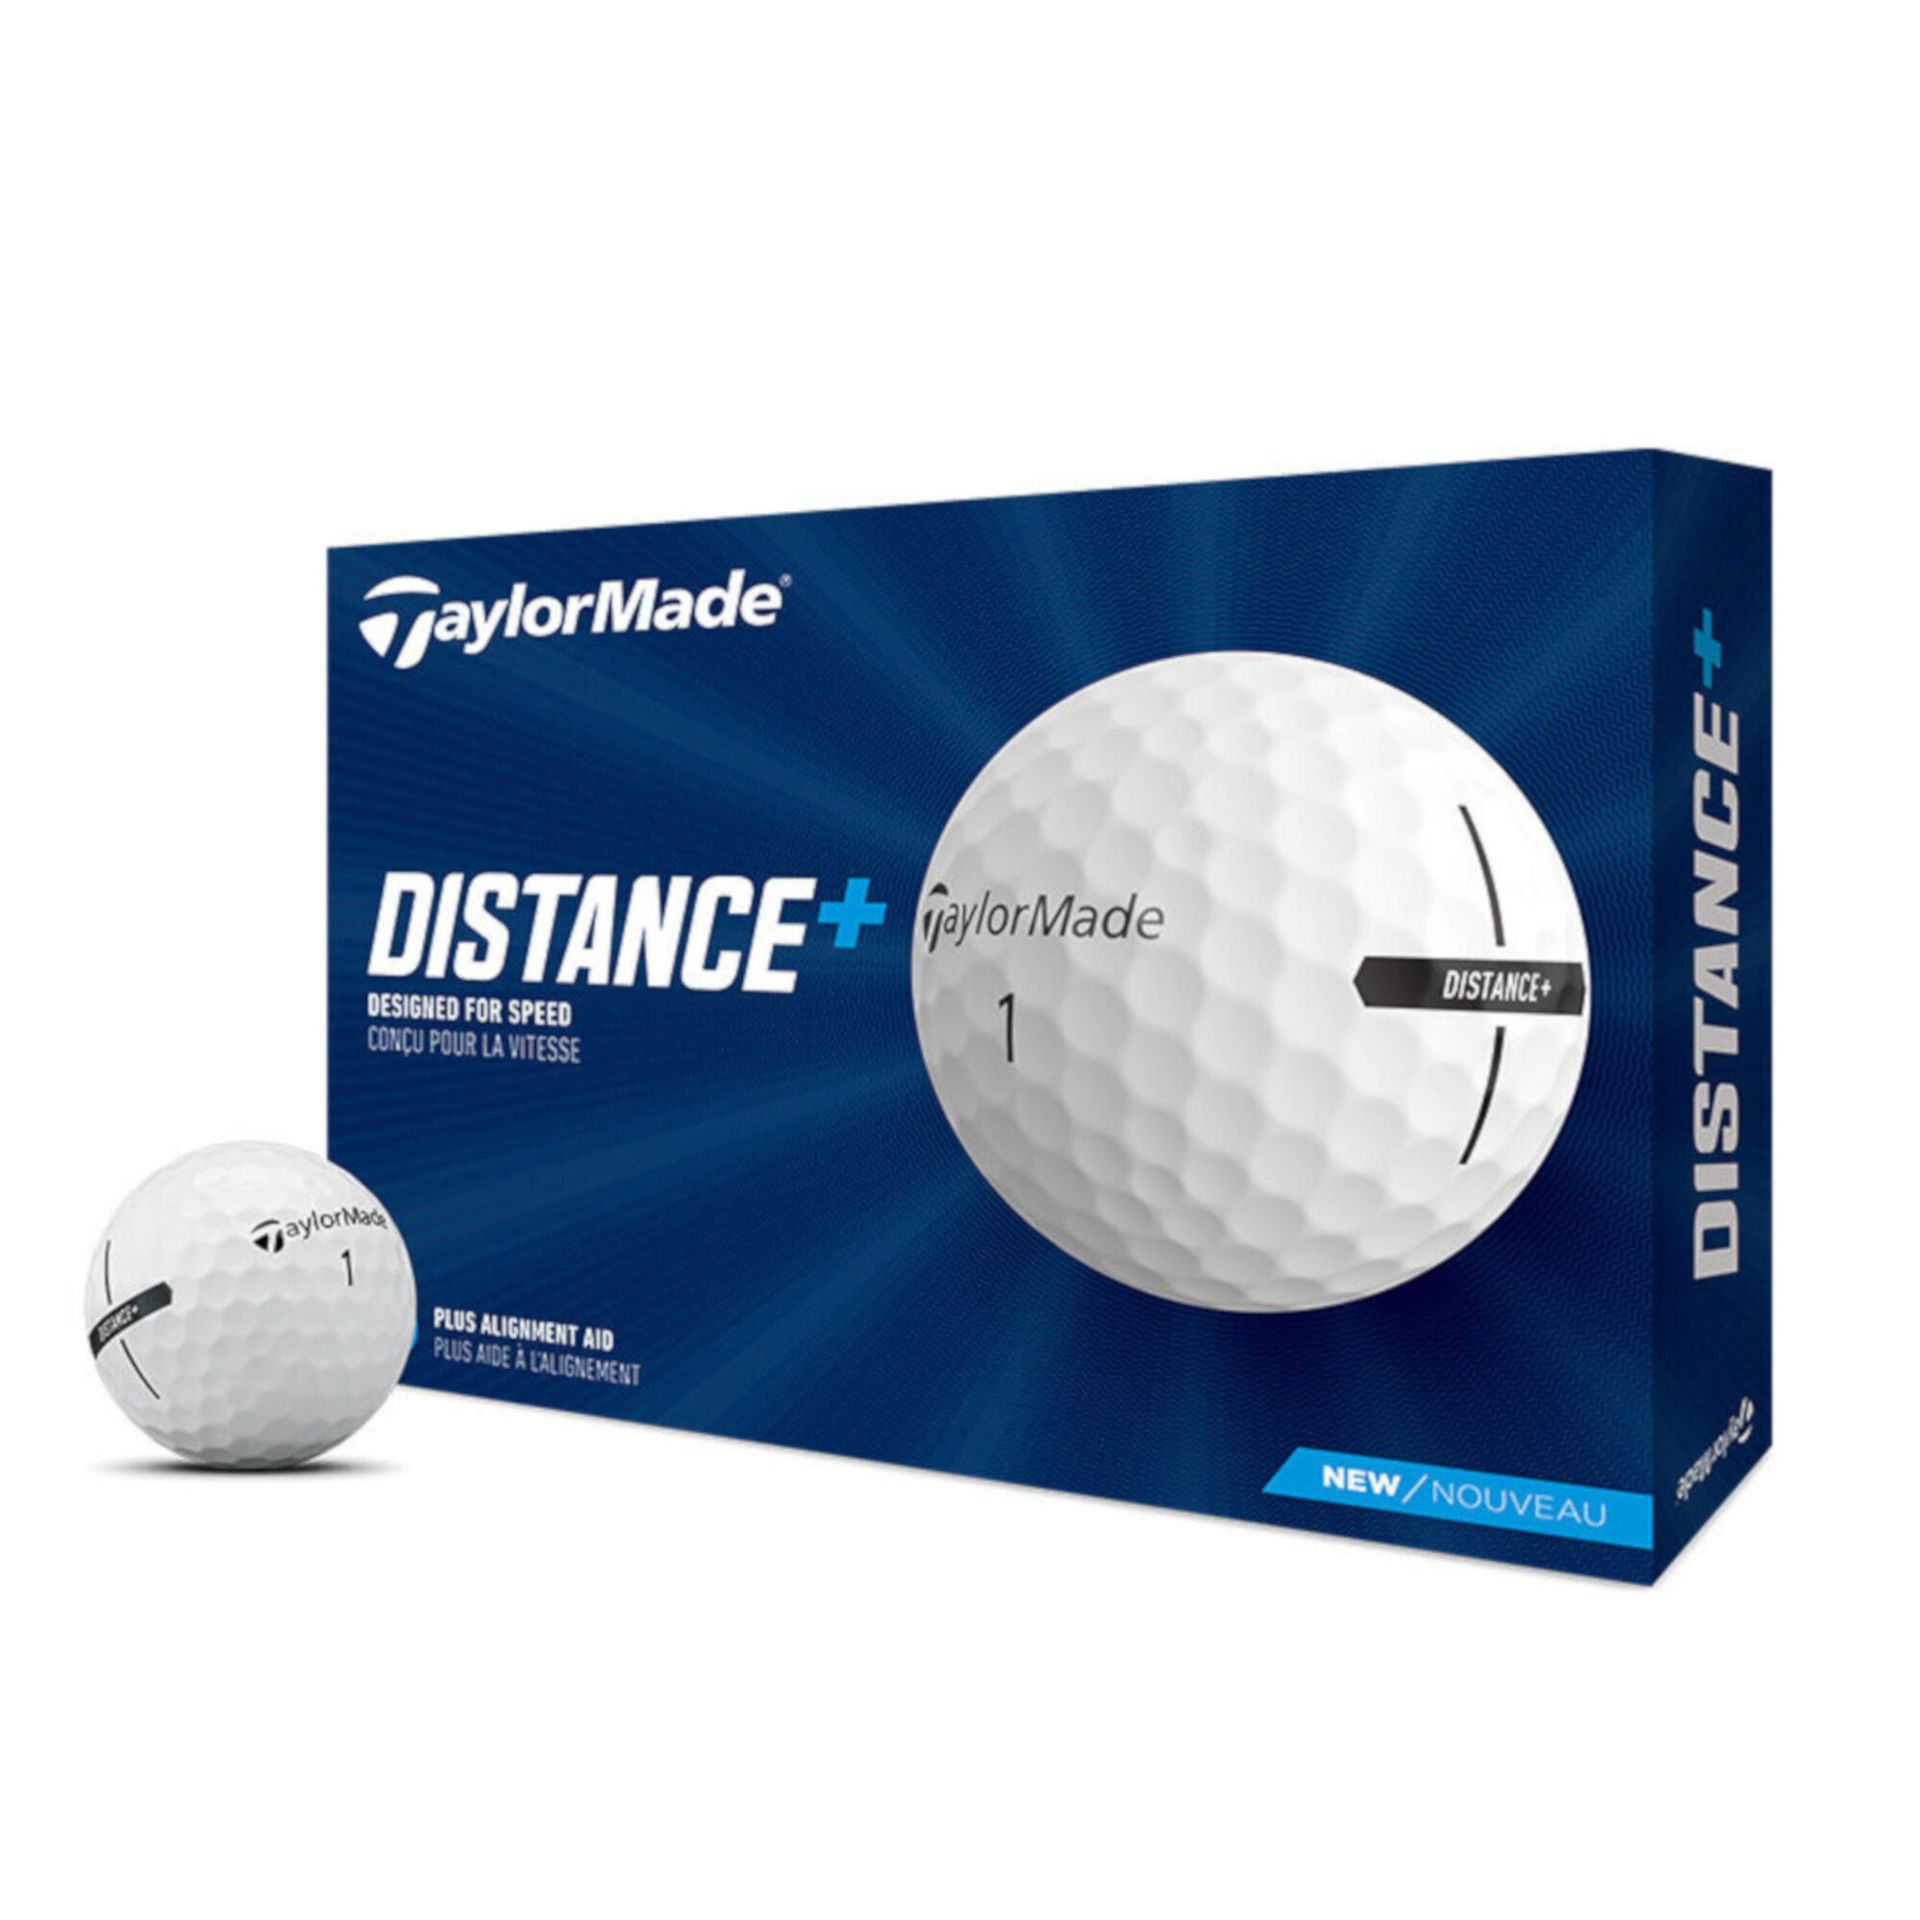 Piłki do golfa Taylordmade Distance+ x12